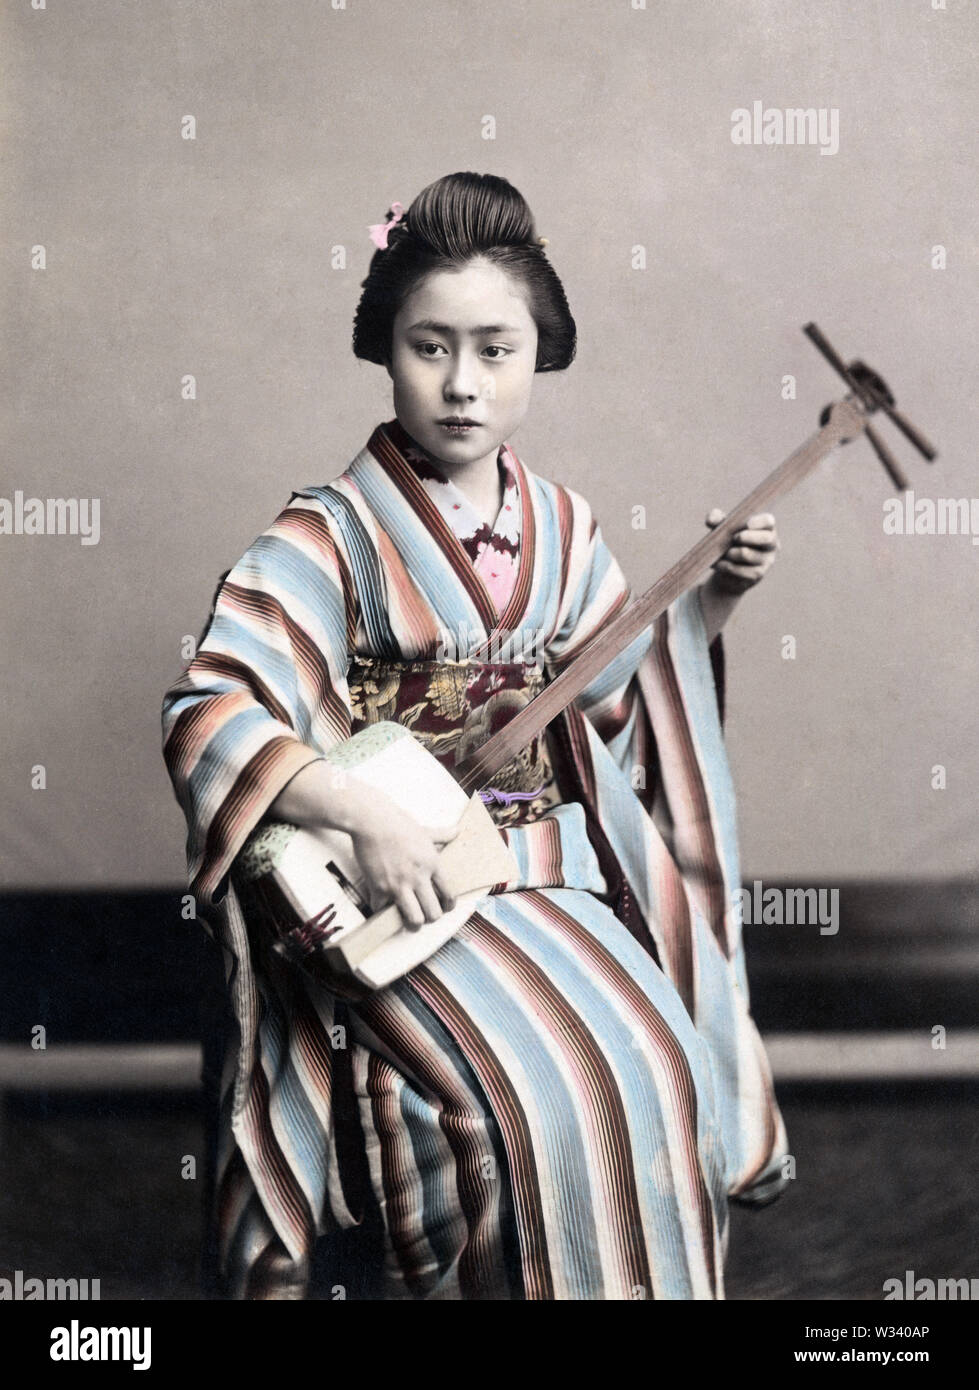 [1890s Japan - Japanische Frau üben die Shamisen] - Frau im Kimono und traditionelle Frisur Üben der Shamisen. 19 Vintage albumen Foto. Stockfoto